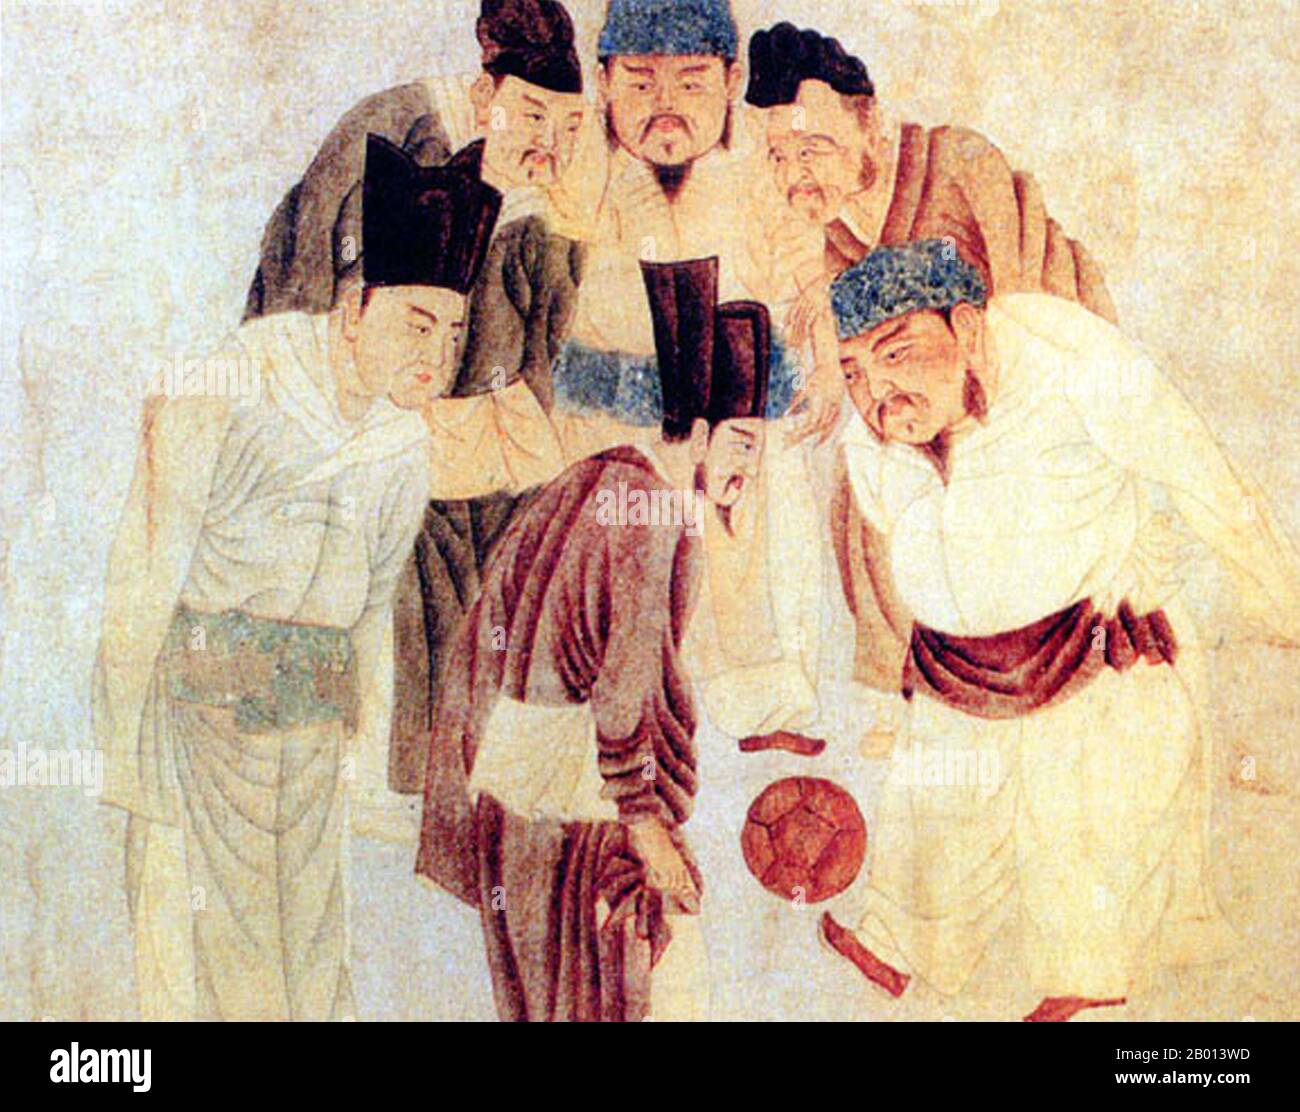 Chine : Empereur Taizu de la chanson (21 mars 927 - 14 novembre 976) jouant du cuju avec le Premier ministre Zhao pu. Tableau de défilement par Qian Xuan (1235-1305), c. 1300.4 l'empereur Taizu, également connu sous le nom de Zhao Kuangyin, était le premier dirigeant de la dynastie Song (Nord) (r. 960-976). En 960, Song Taizu a aidé à réunir la majeure partie de la Chine après la fragmentation et la rébellion entre la chute de la dynastie Tang en 907 et l'établissement de la dynastie Song. Il a établi les règles et la politique de base de Song ancêtre pour les futurs empereurs. Il a été rappelé pour son expansion du système national d'examen civil. Banque D'Images